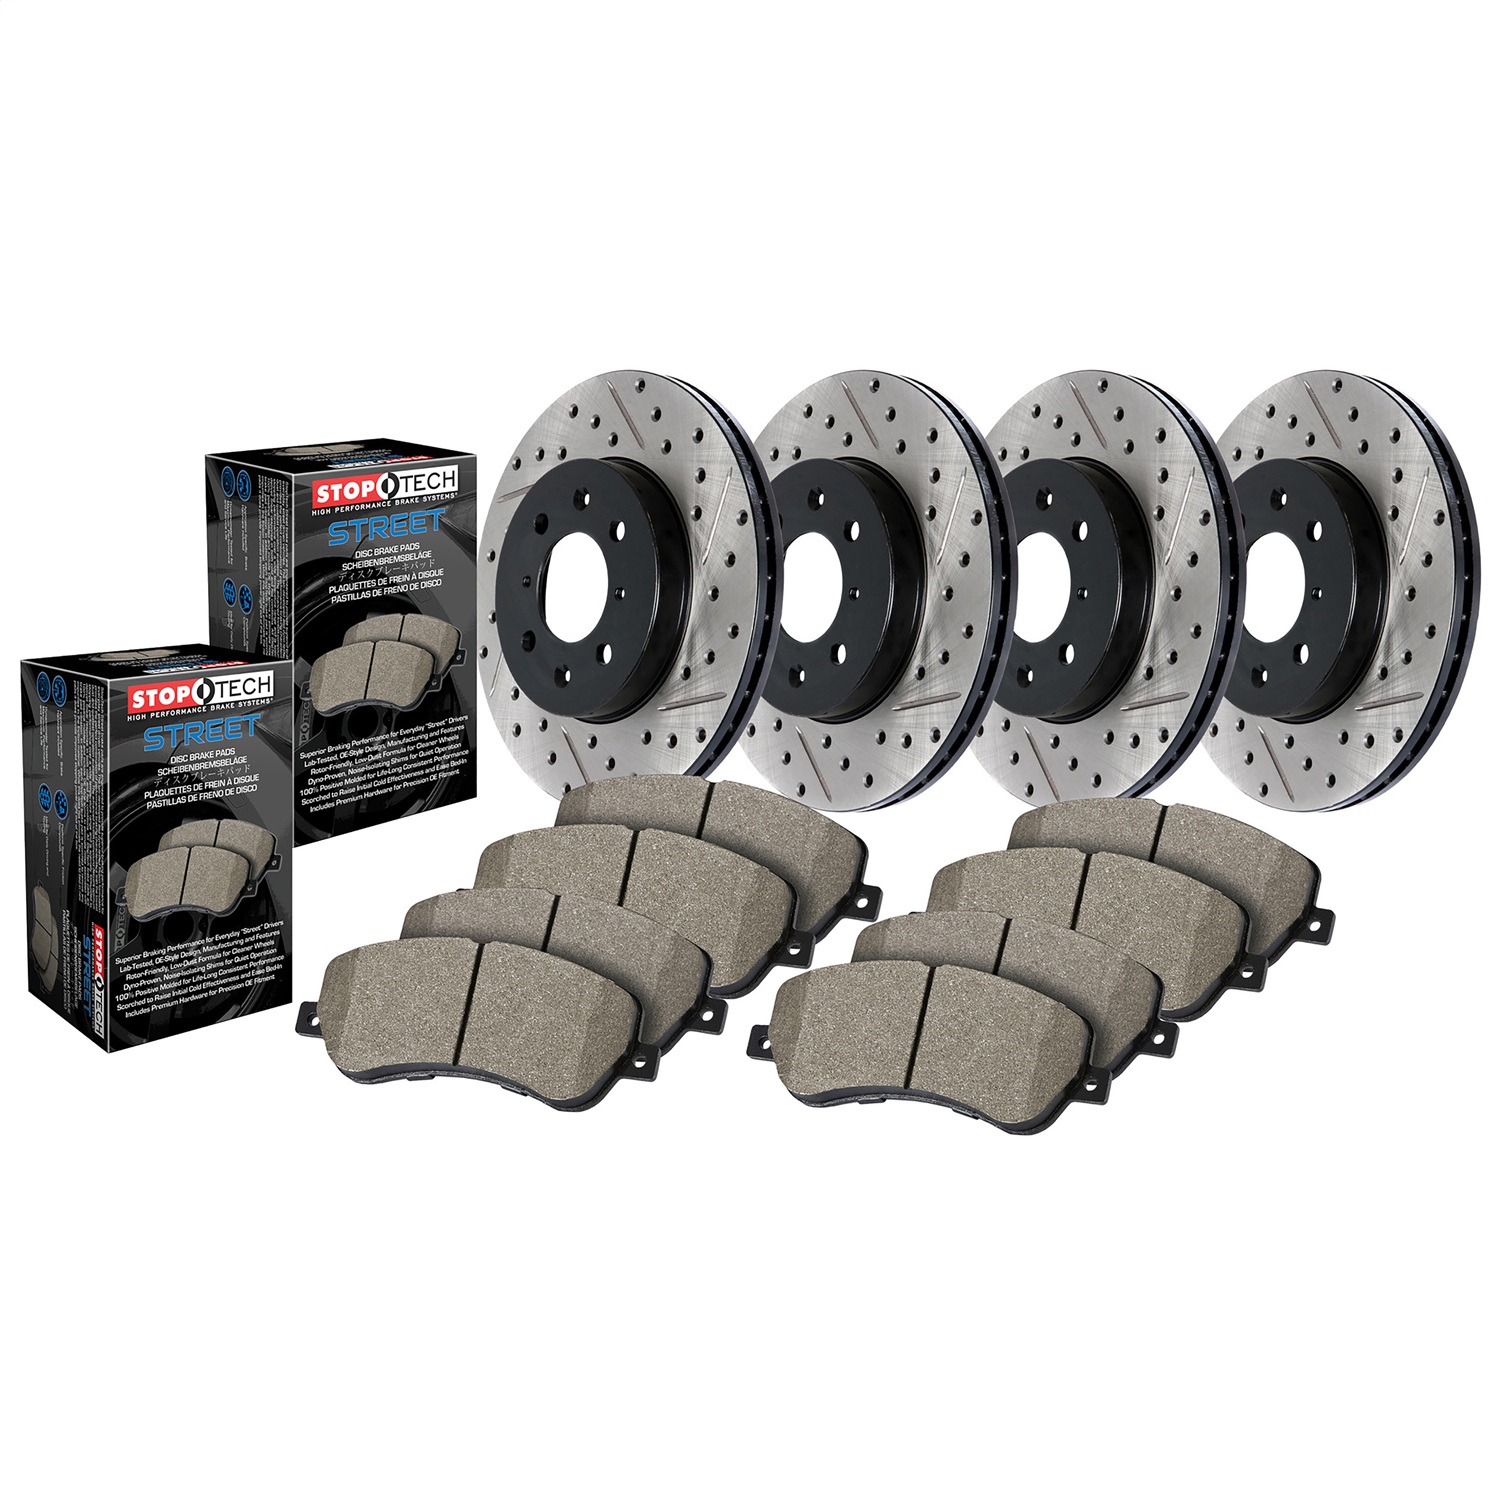 StopTech 935.65134 Disc Brake Upgrade Kit